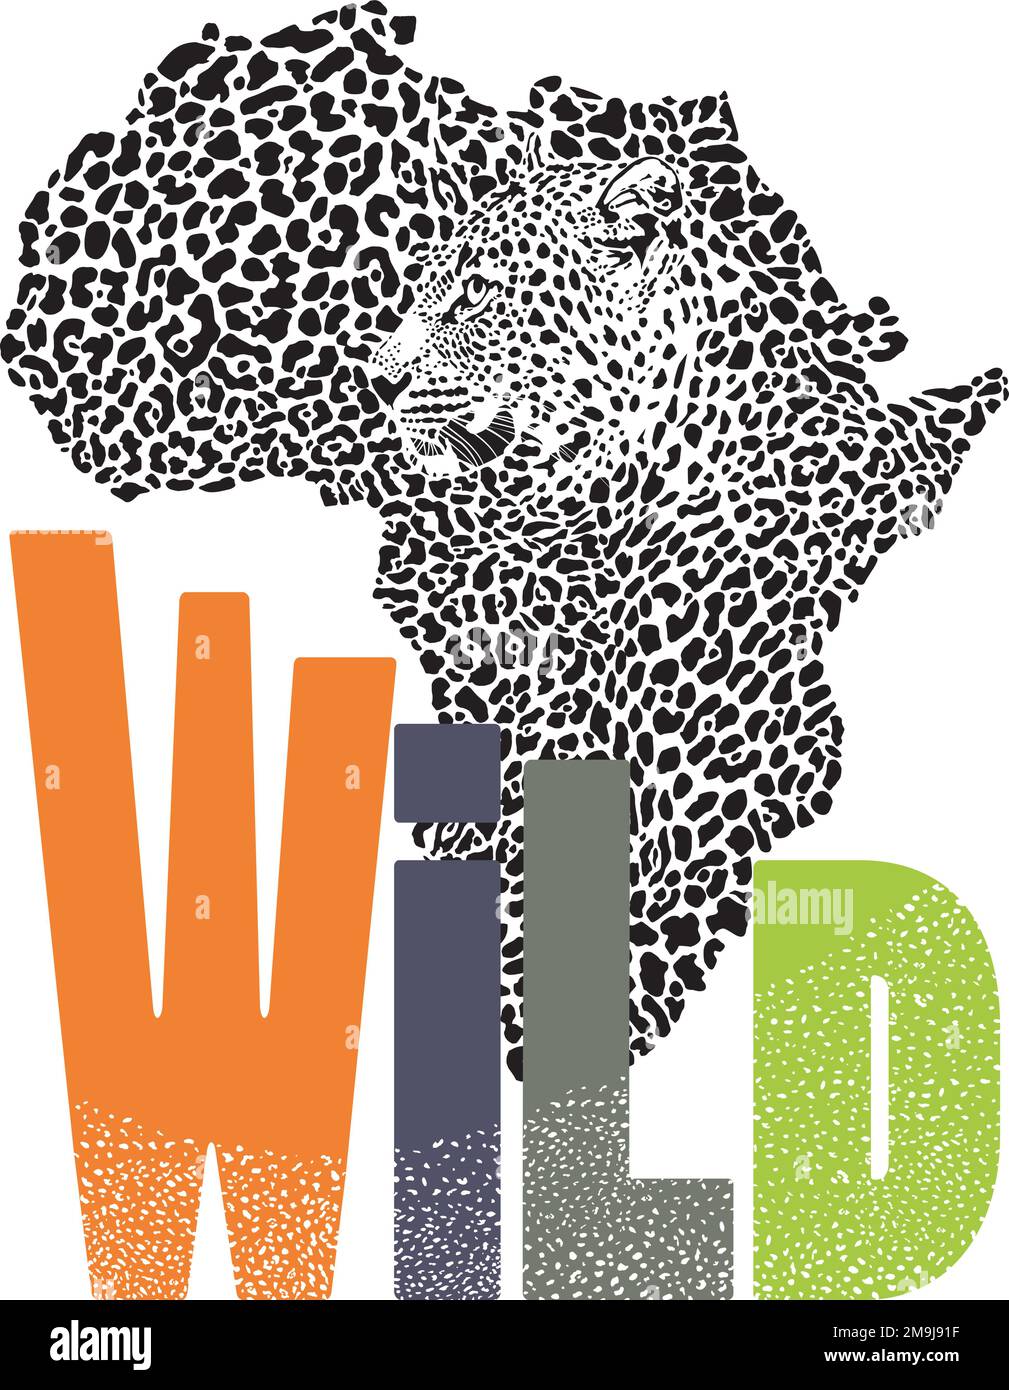 Carte du léopard et du continent africain sauvage Illustration de Vecteur